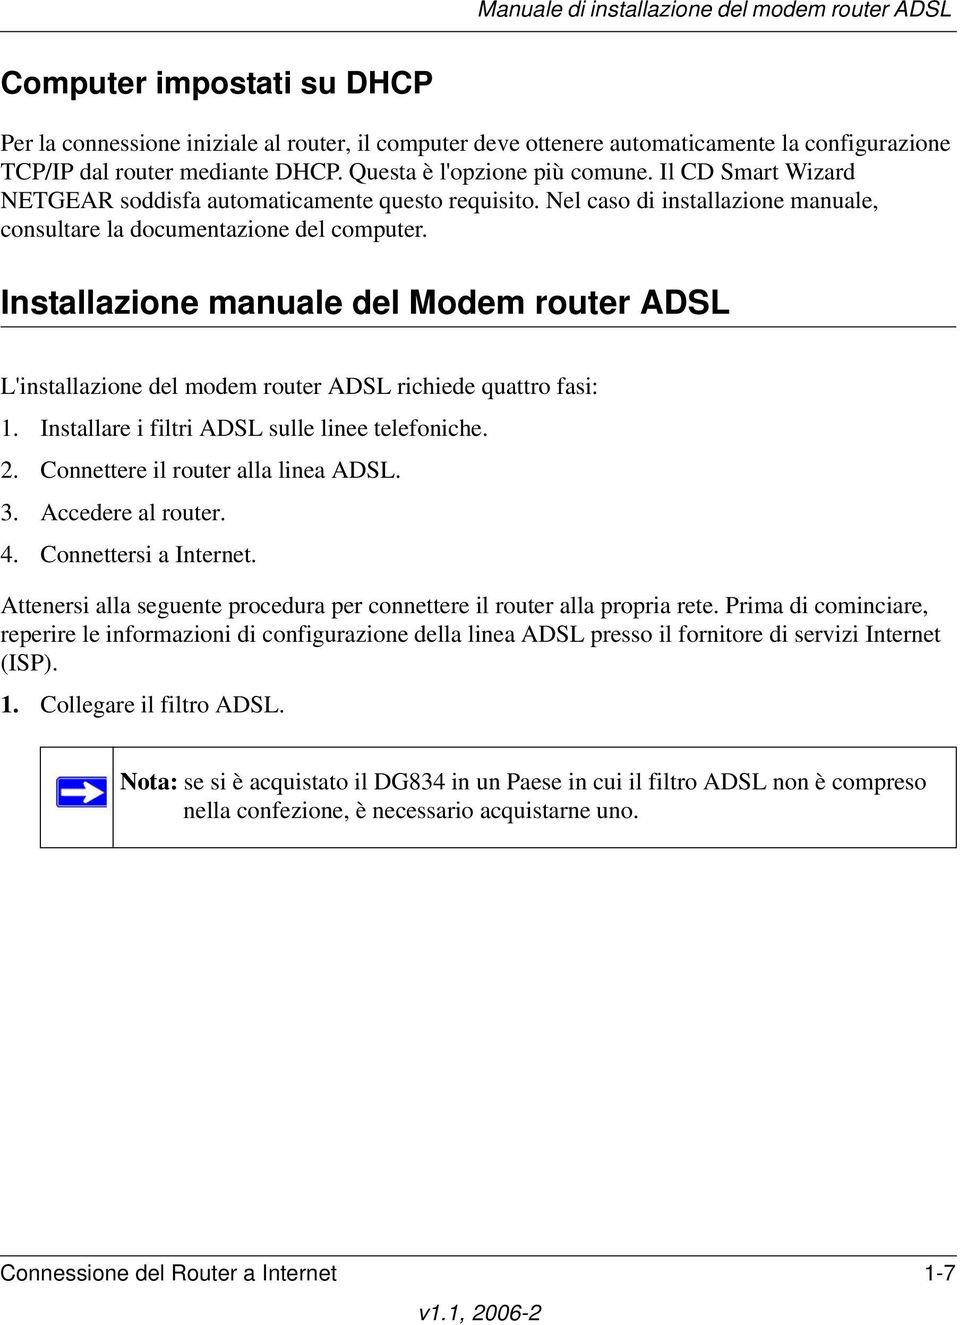 Installazione manuale del Modem router ADSL L'installazione del modem router ADSL richiede quattro fasi: 1. Installare i filtri ADSL sulle linee telefoniche. 2. Connettere il router alla linea ADSL.